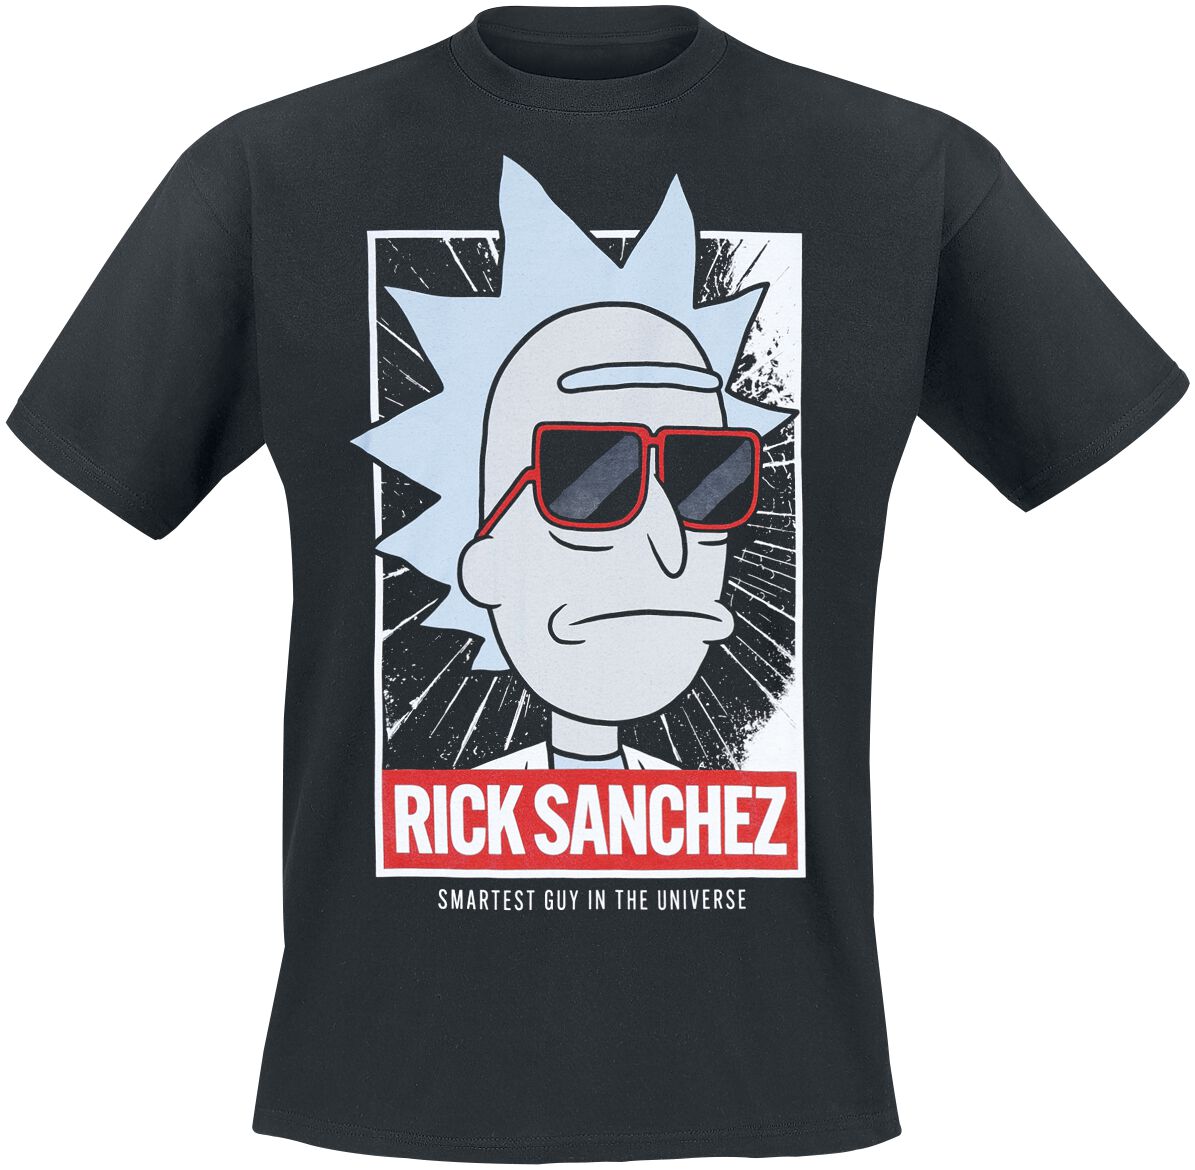 Rick And Morty T-Shirt - Smart Rick - S bis M - für Männer - Größe S - schwarz  - Lizenzierter Fanartikel